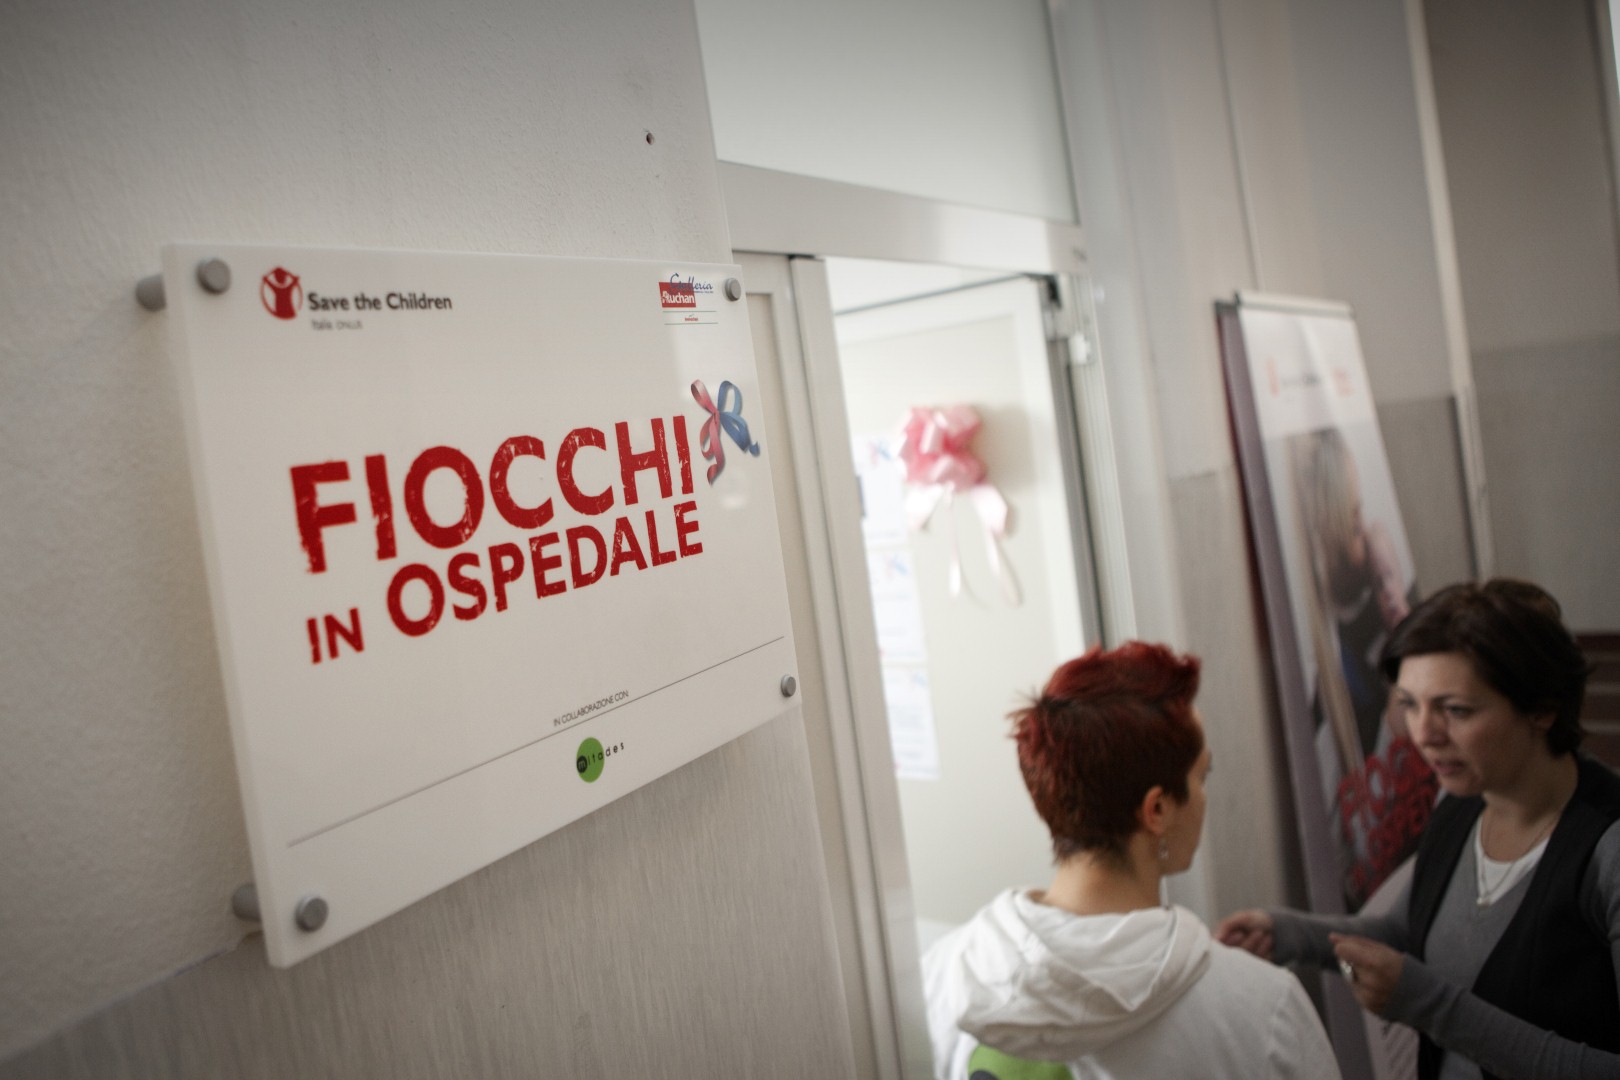 Save the Children, Fiocchi in ospedale. Milano.